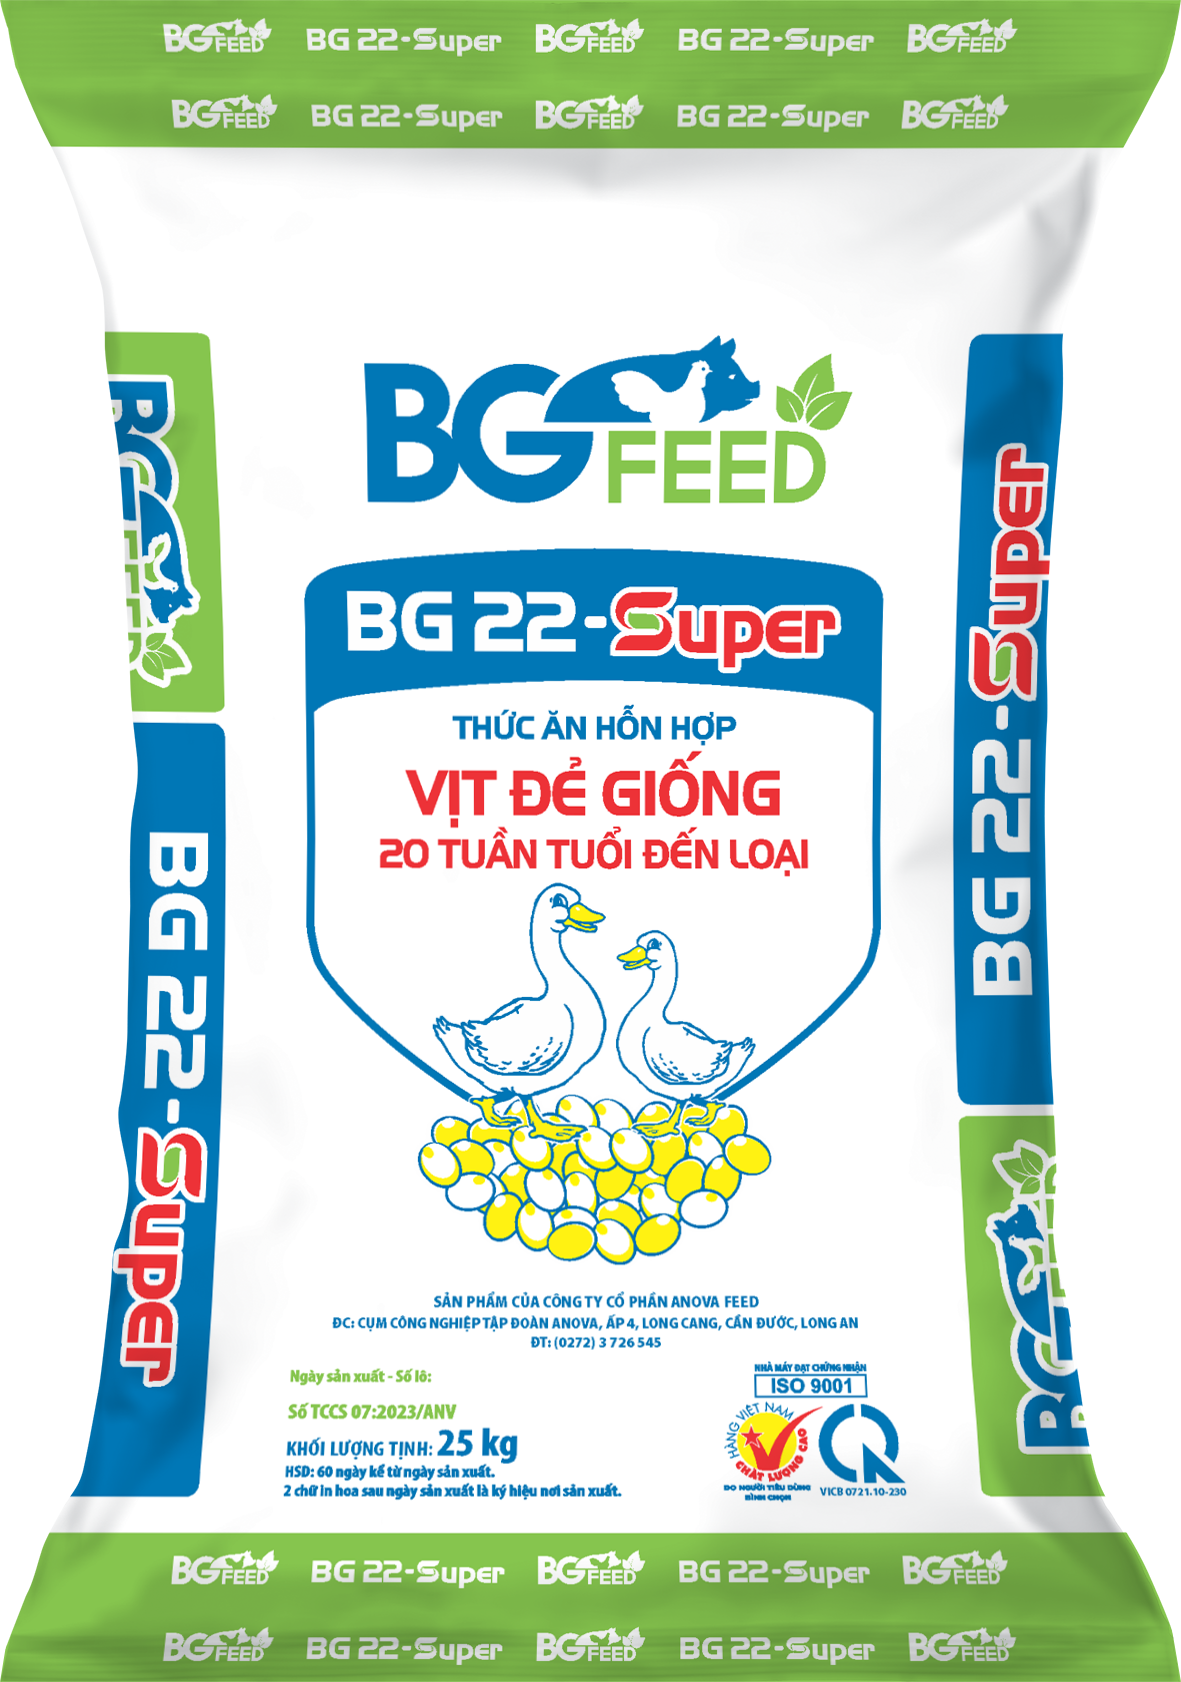 Thức ăn hỗn hợp VỊT ĐẺ GIỐNG 20 tuần tuổi - loại BG22 - SUPER